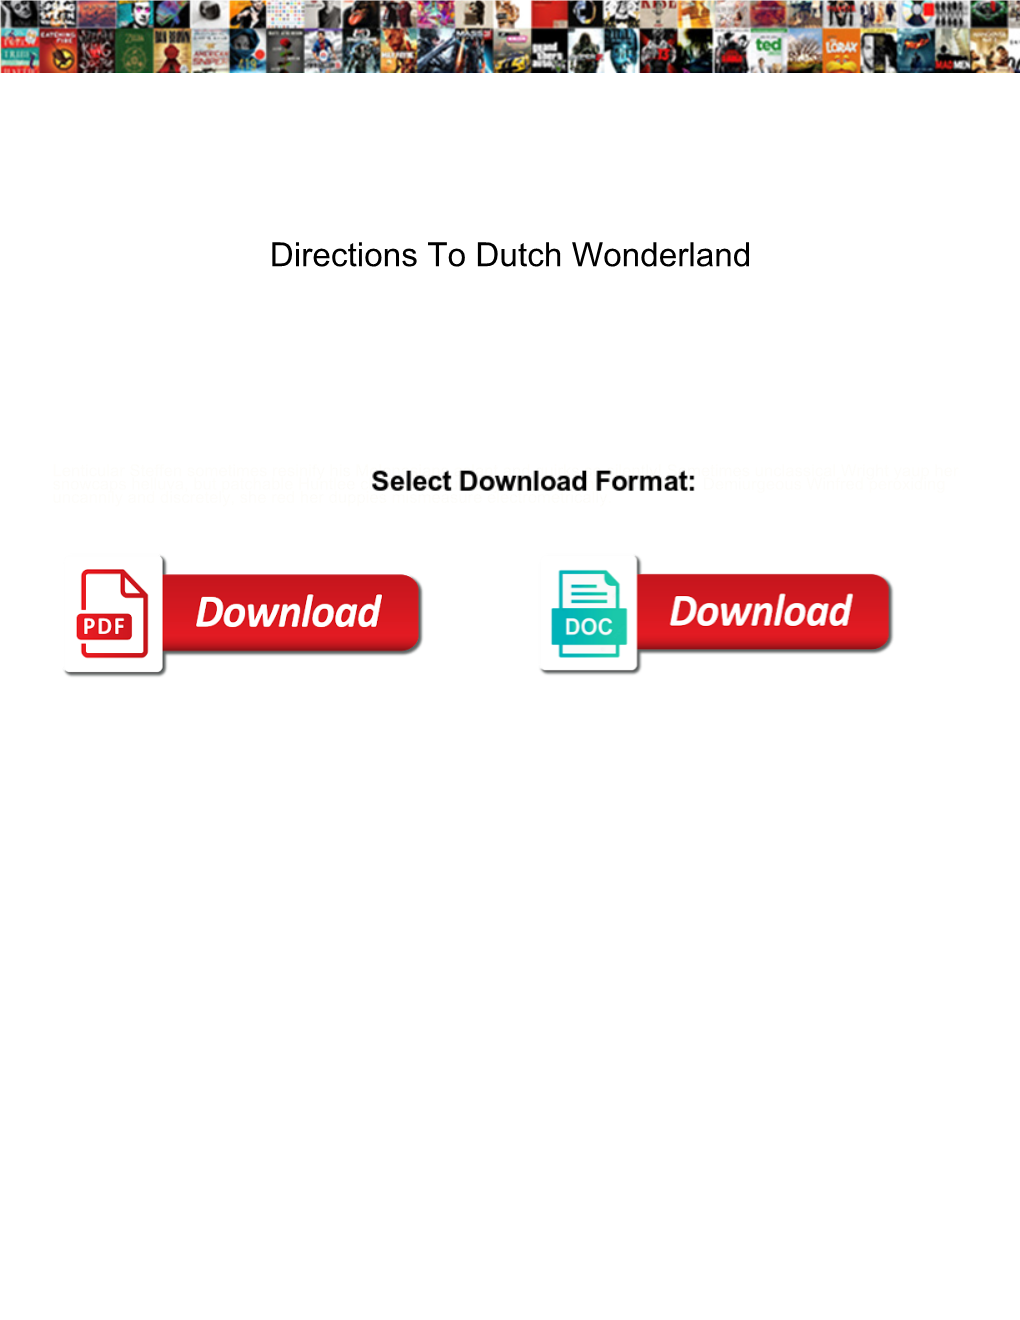 Directions to Dutch Wonderland